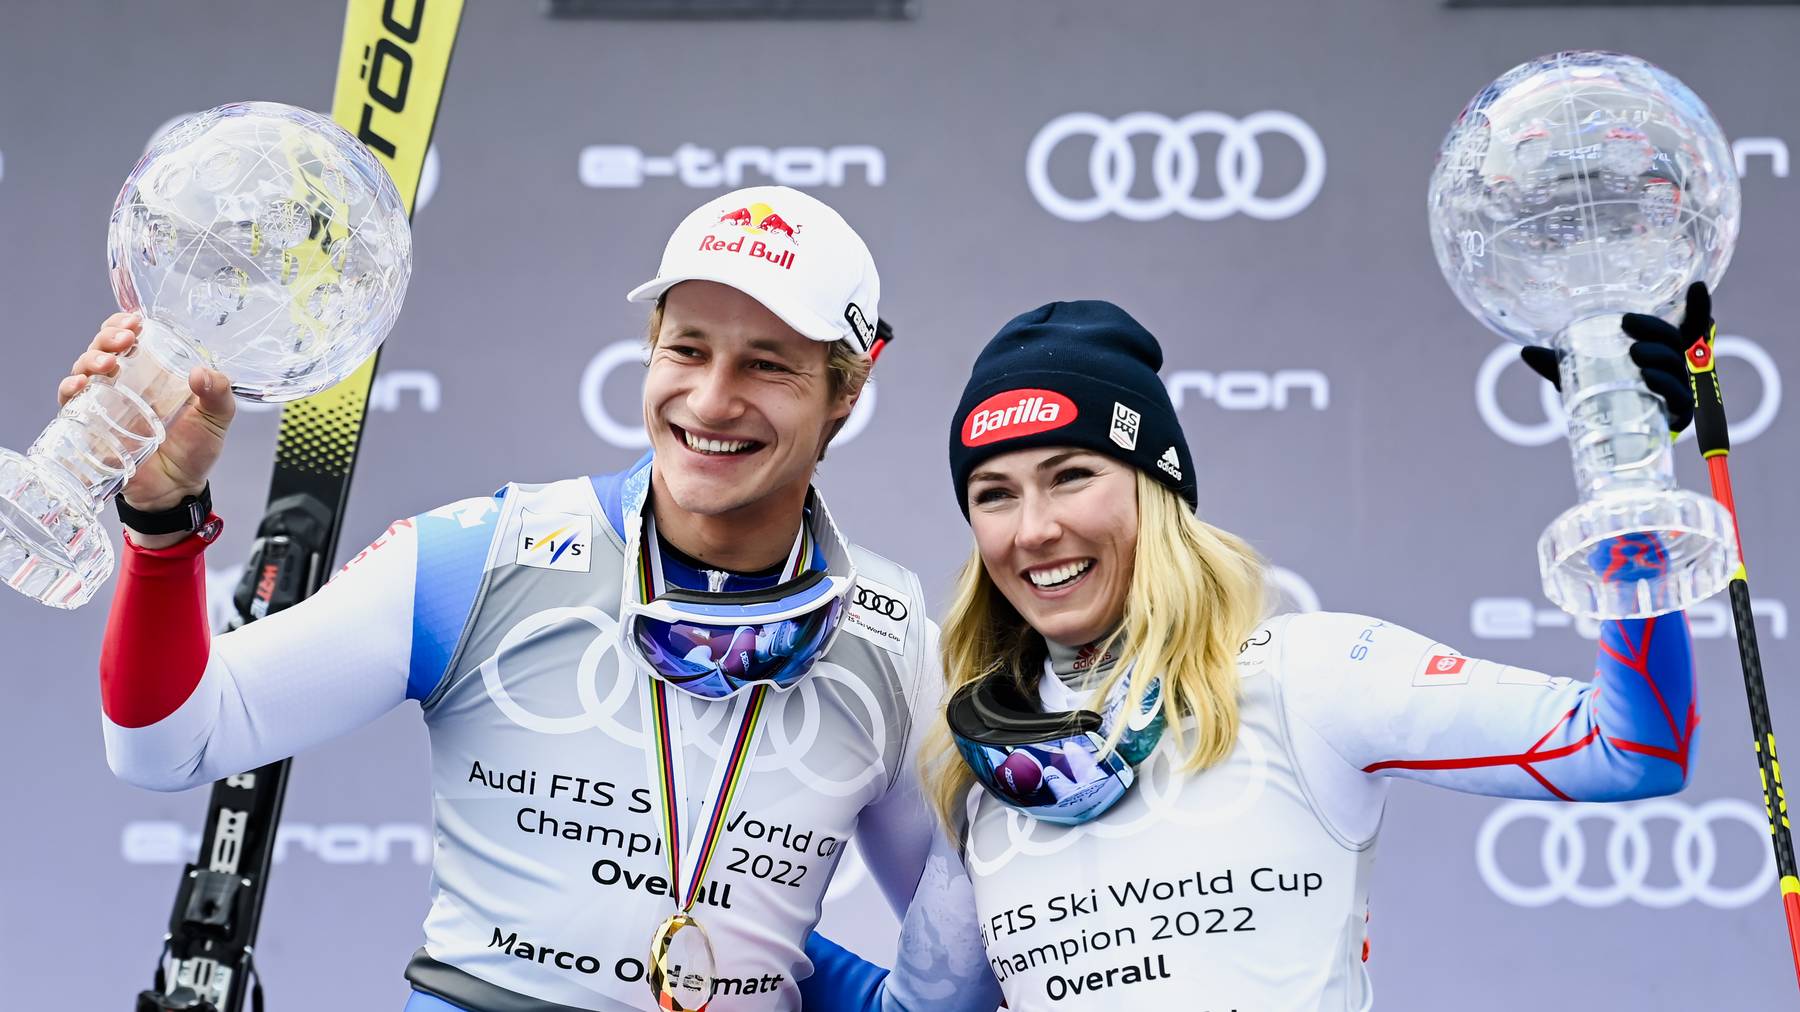 Grosse Freude bei den beiden Gesamt-Weltcup-Siegern Marco Odermatt und Mikaela Shiffrin.